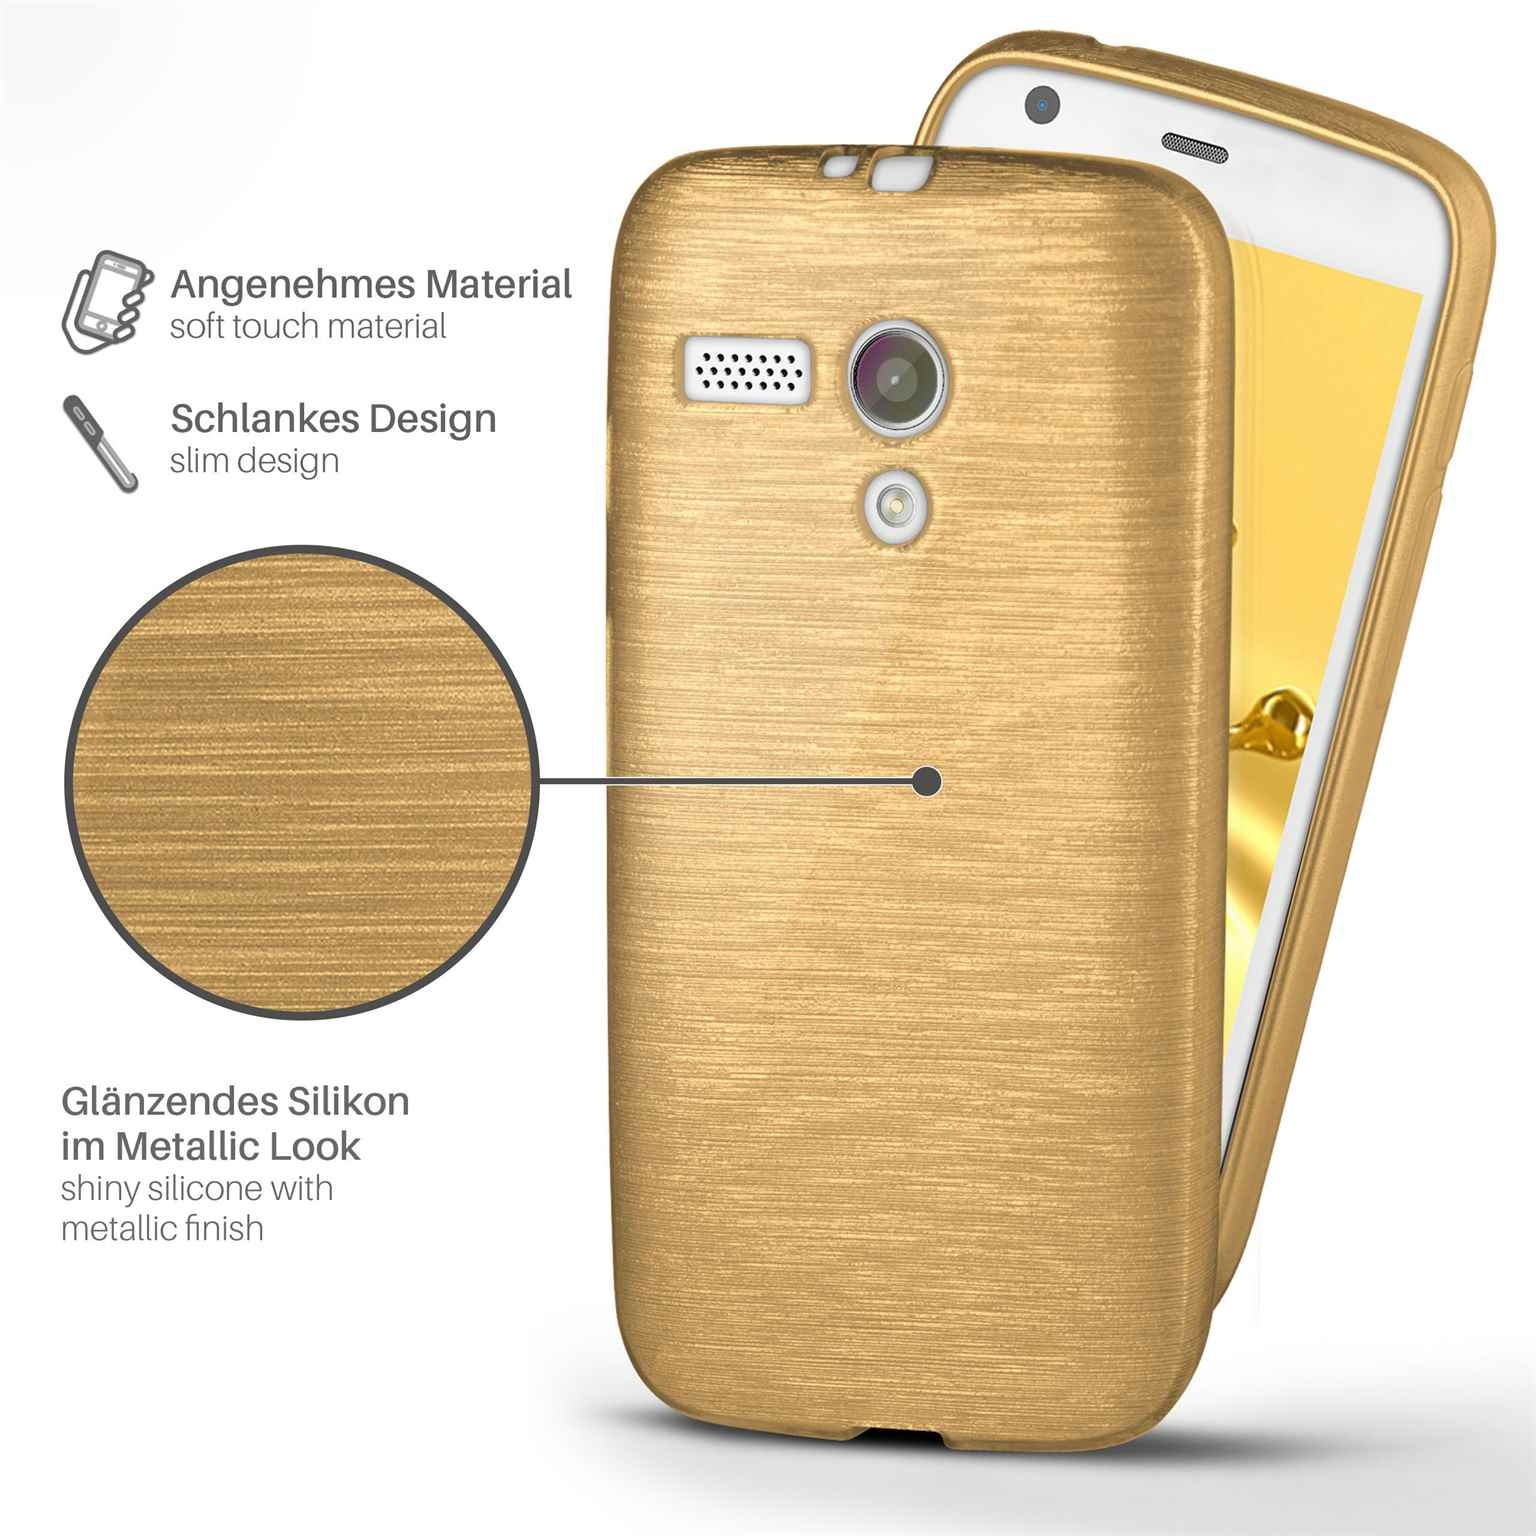 Motorola, Moto Backcover, MOEX Case, Brushed G, Ivory-Gold